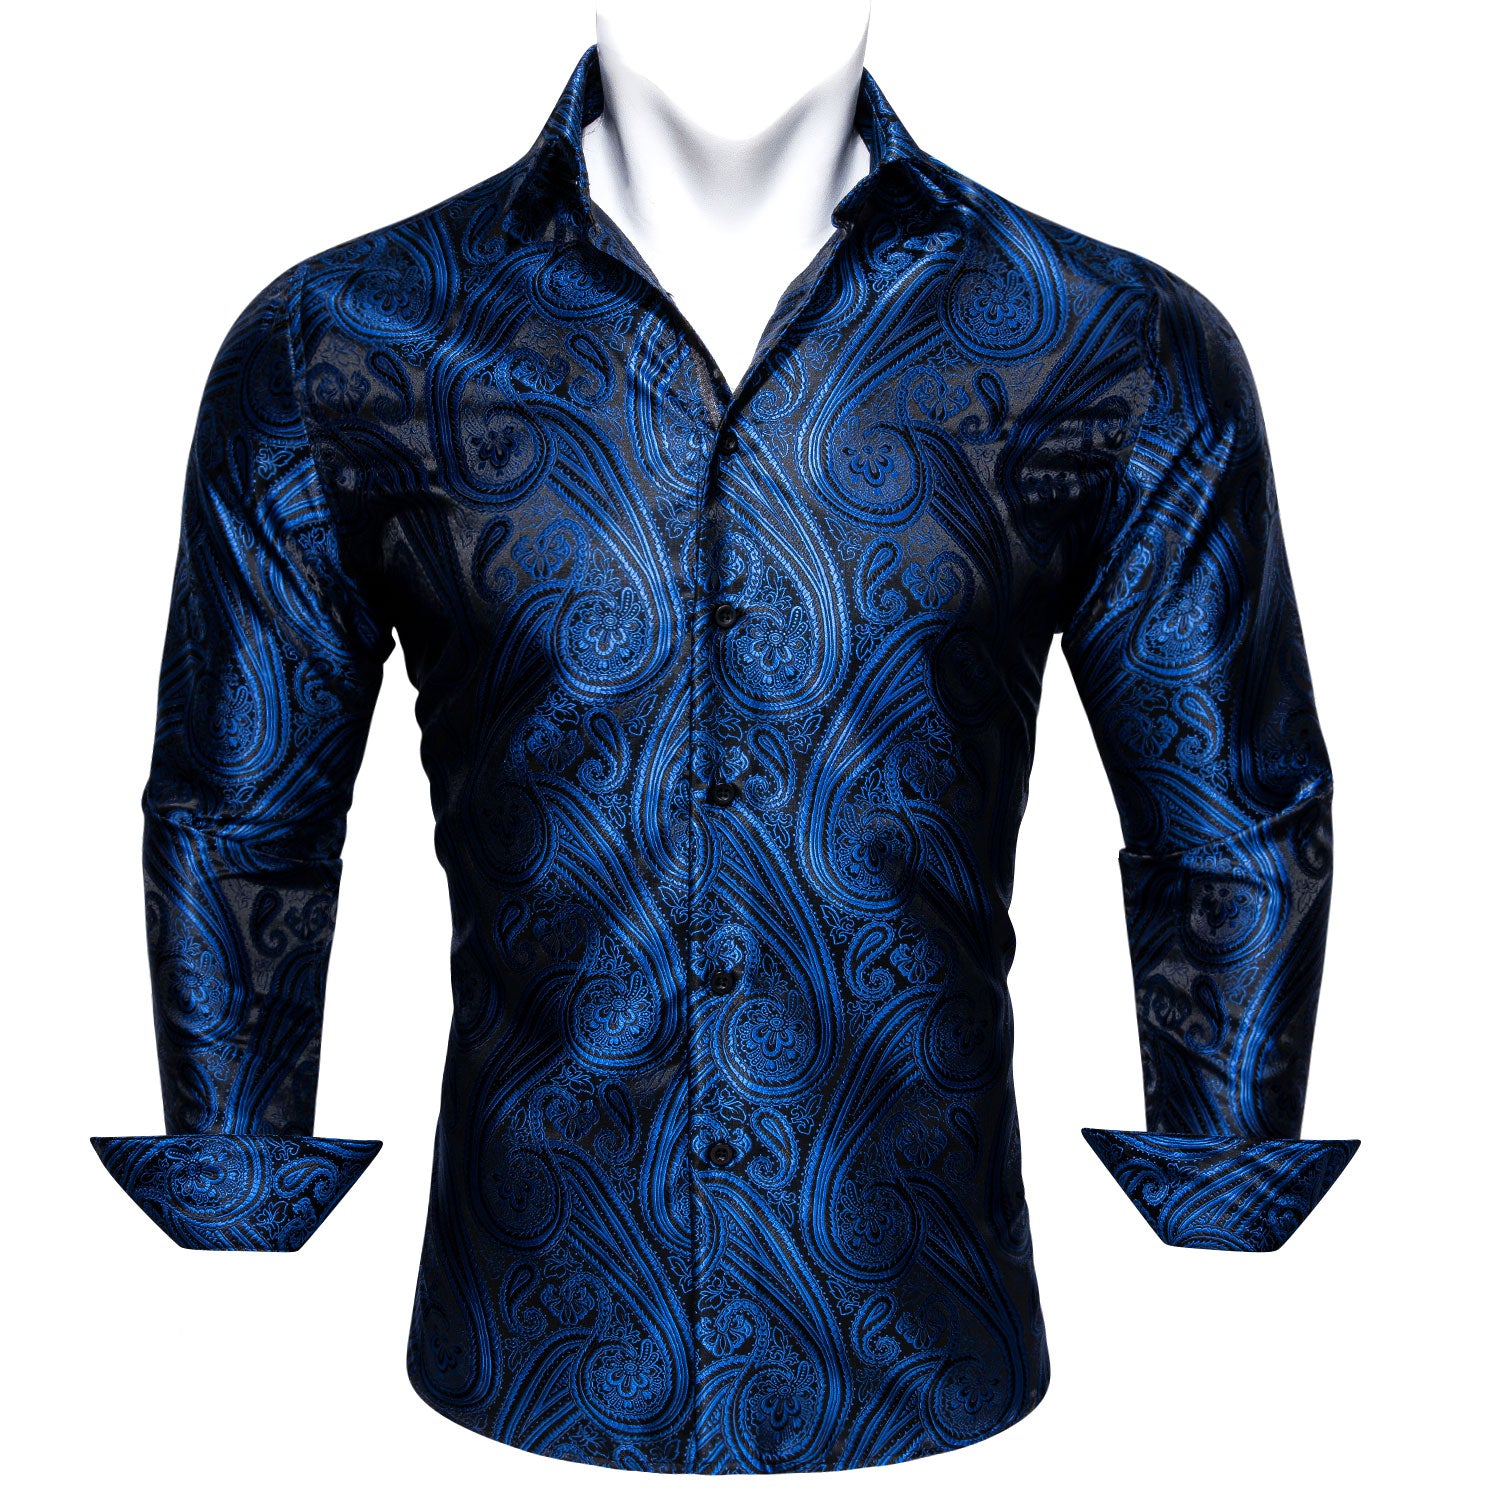 Barry.wang Deep Blue Paisley Silk Men's Long Sleeve Shirt